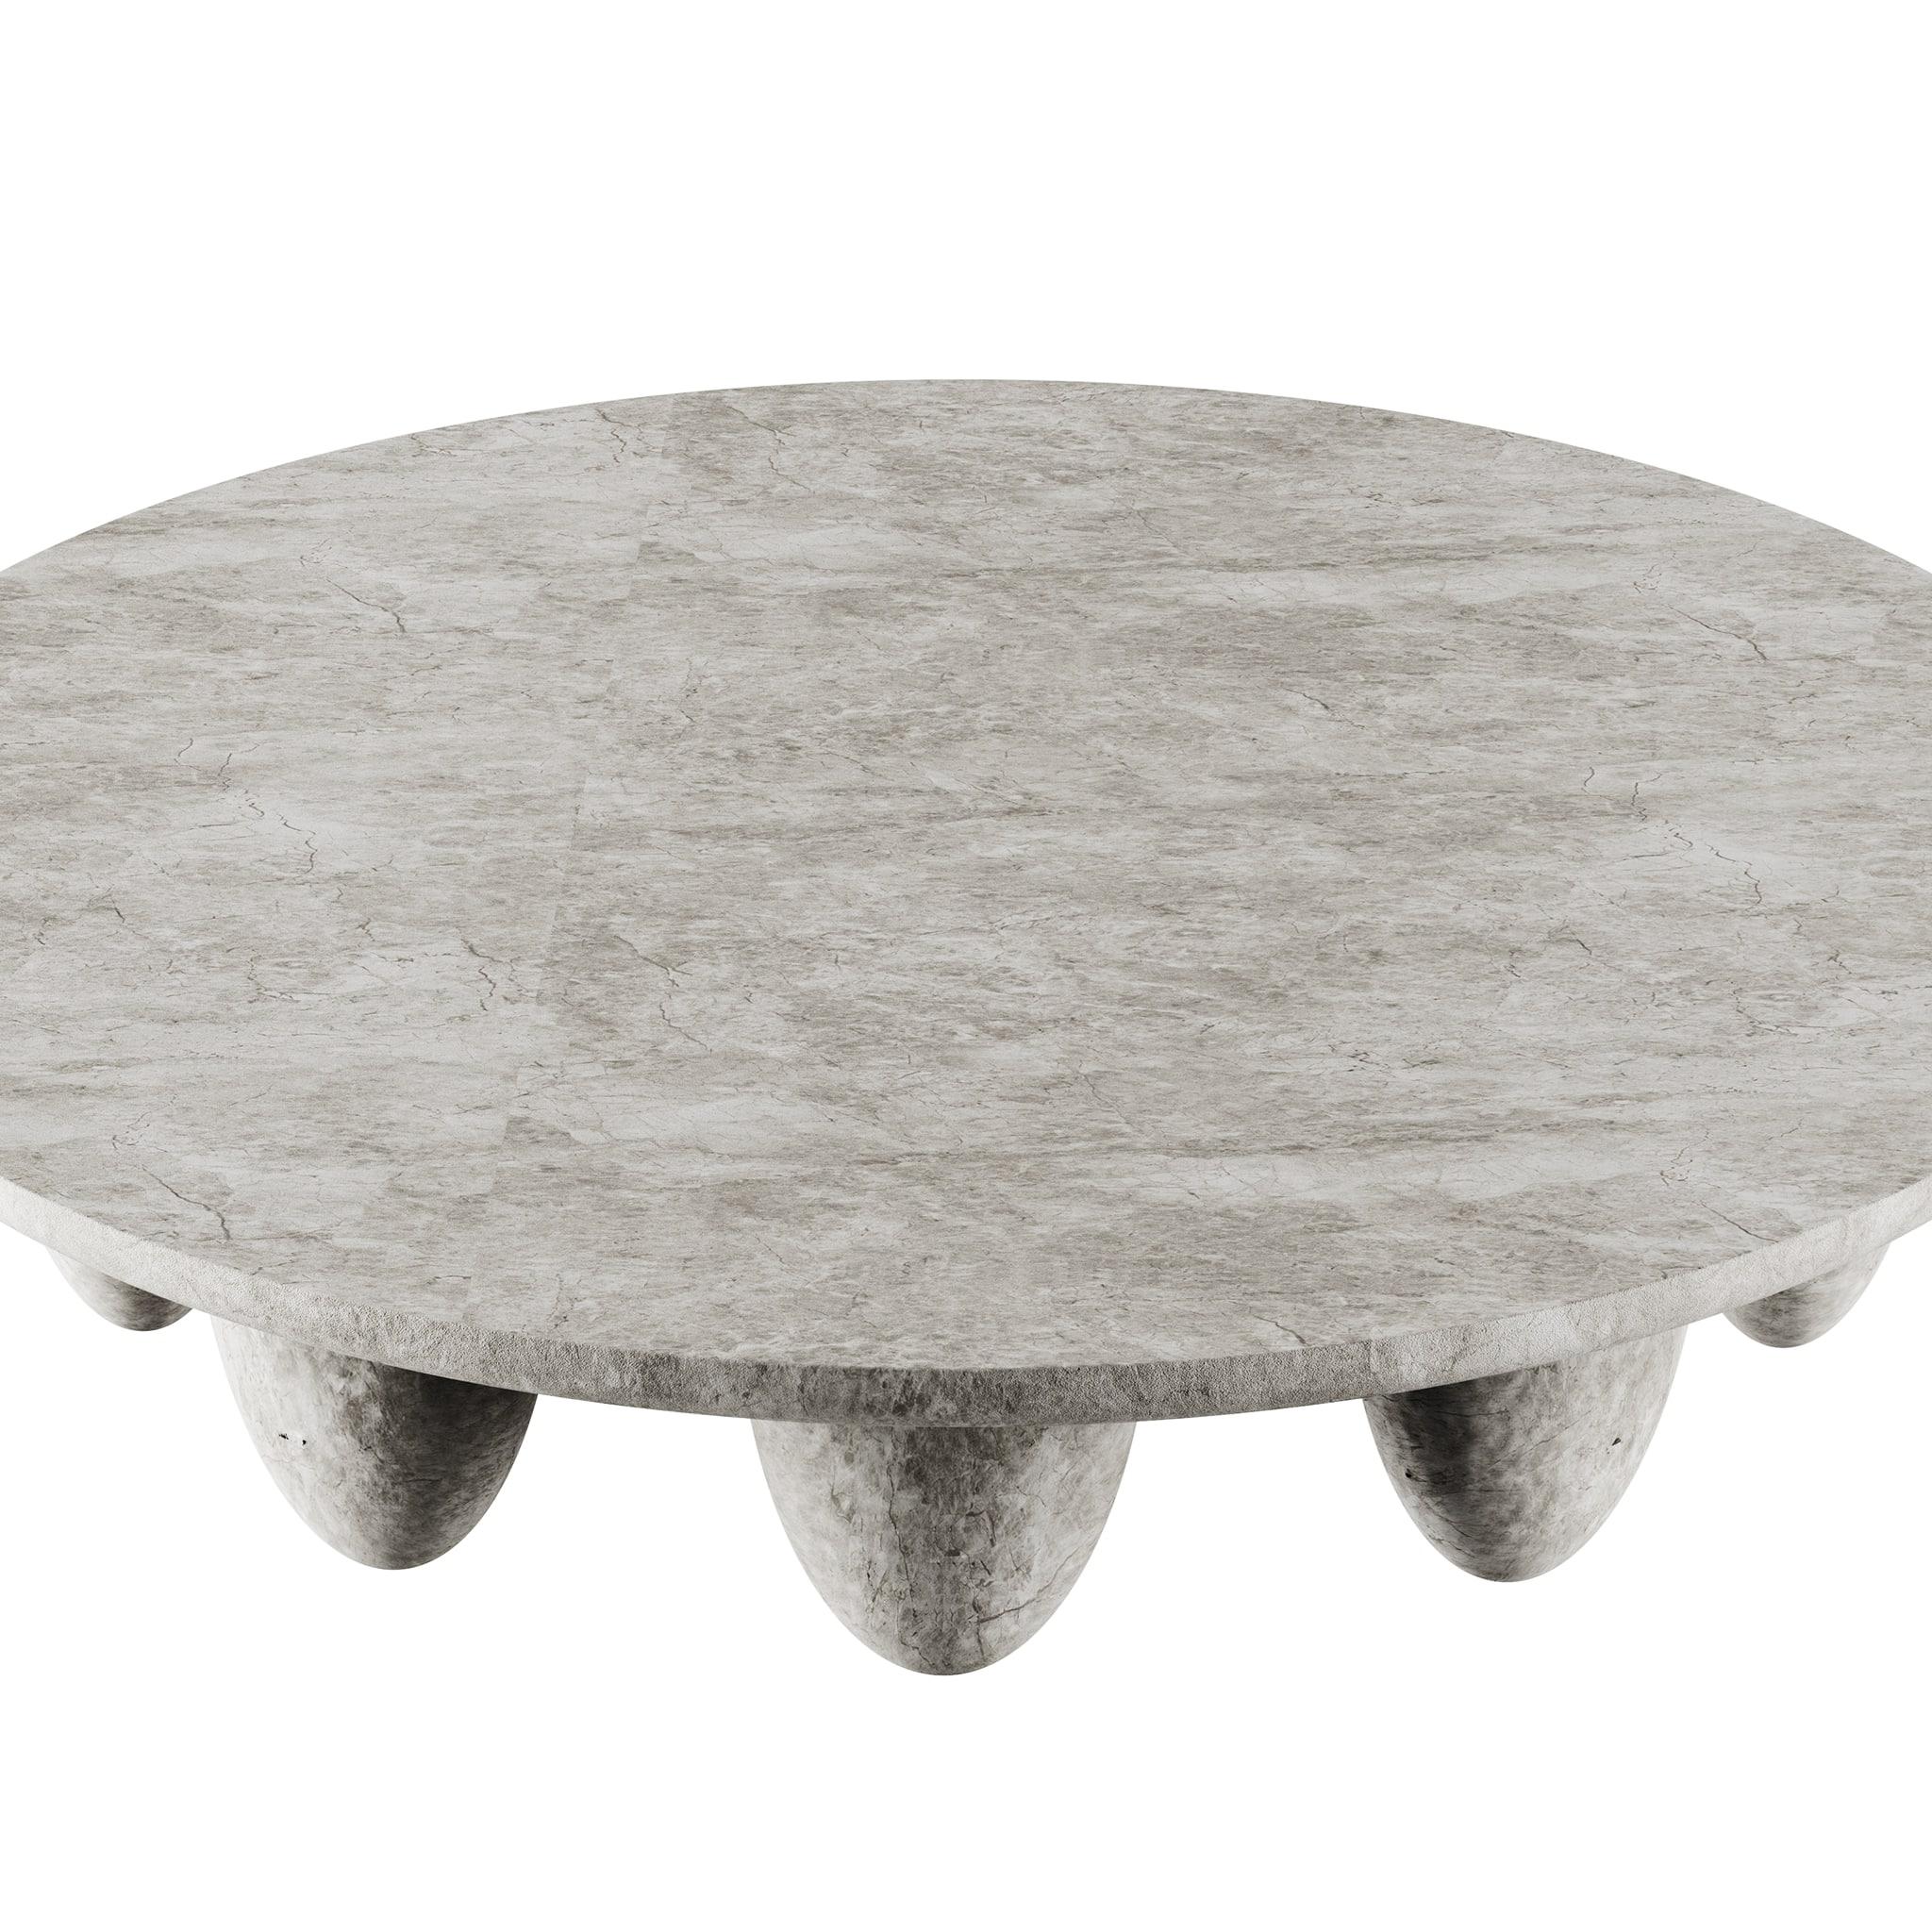 La table centrale Lunarys Grigio Tundra est une pièce de design moderne exceptionnelle. L'anatomie voluptueuse et la texture douce de la table centrale d'extérieur moderne sont parfaites pour les projets d'intérieur ou d'extérieur. Définie par une